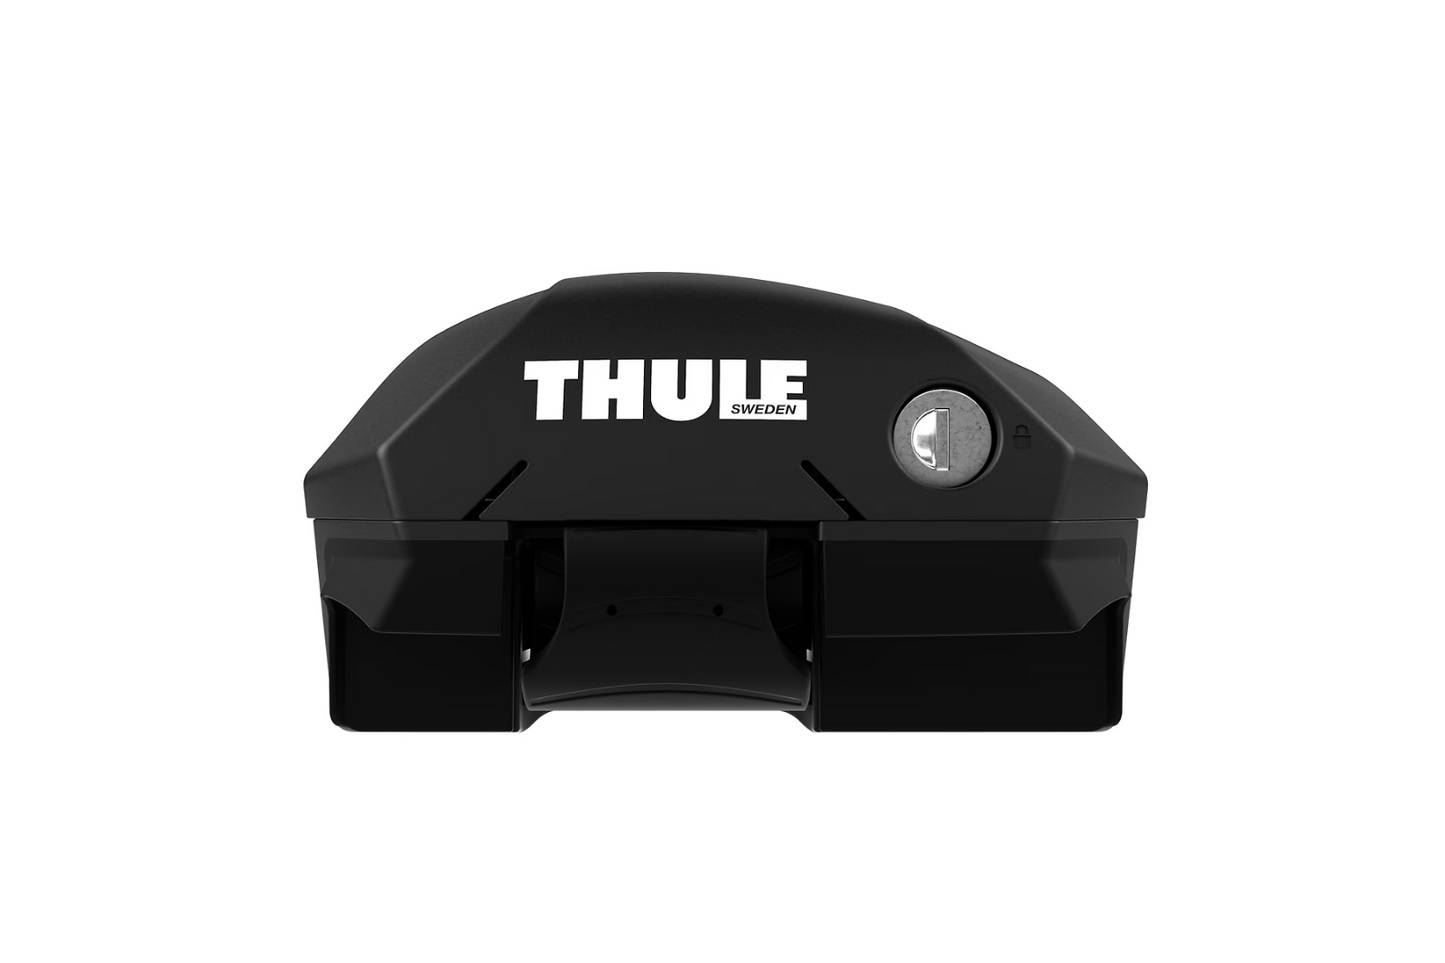 Thule Edge Raised Rail Foot Pack 720400 Set of 4